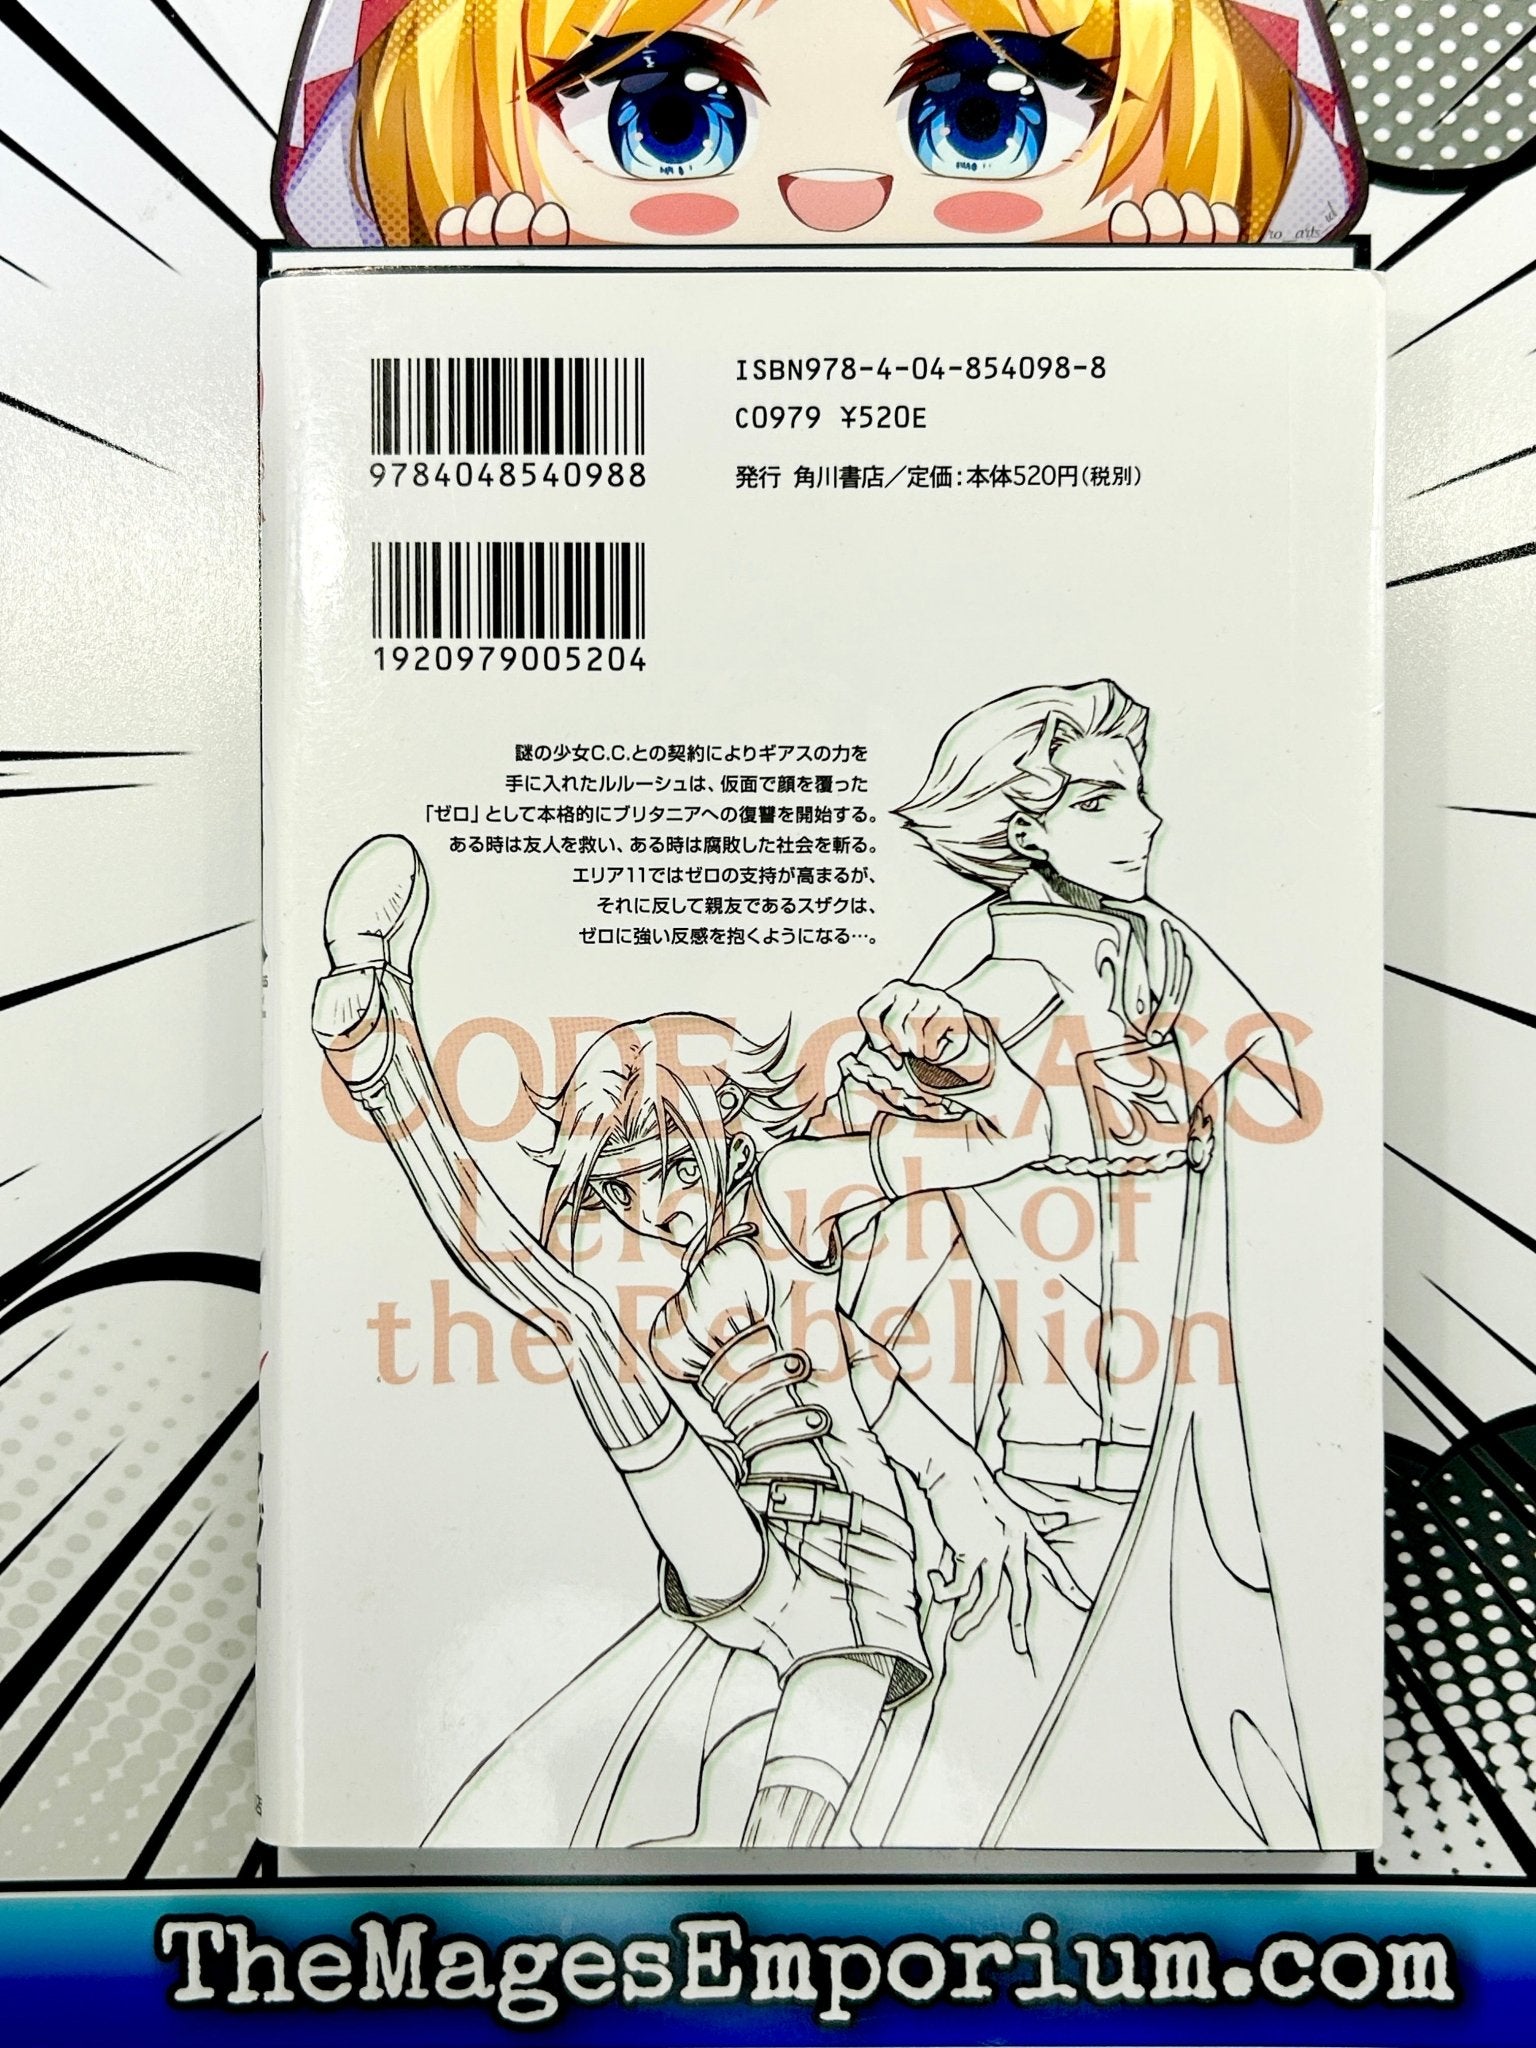 Code Geass Manga Volume 8: Lelouch of the Rebellion: v. 8